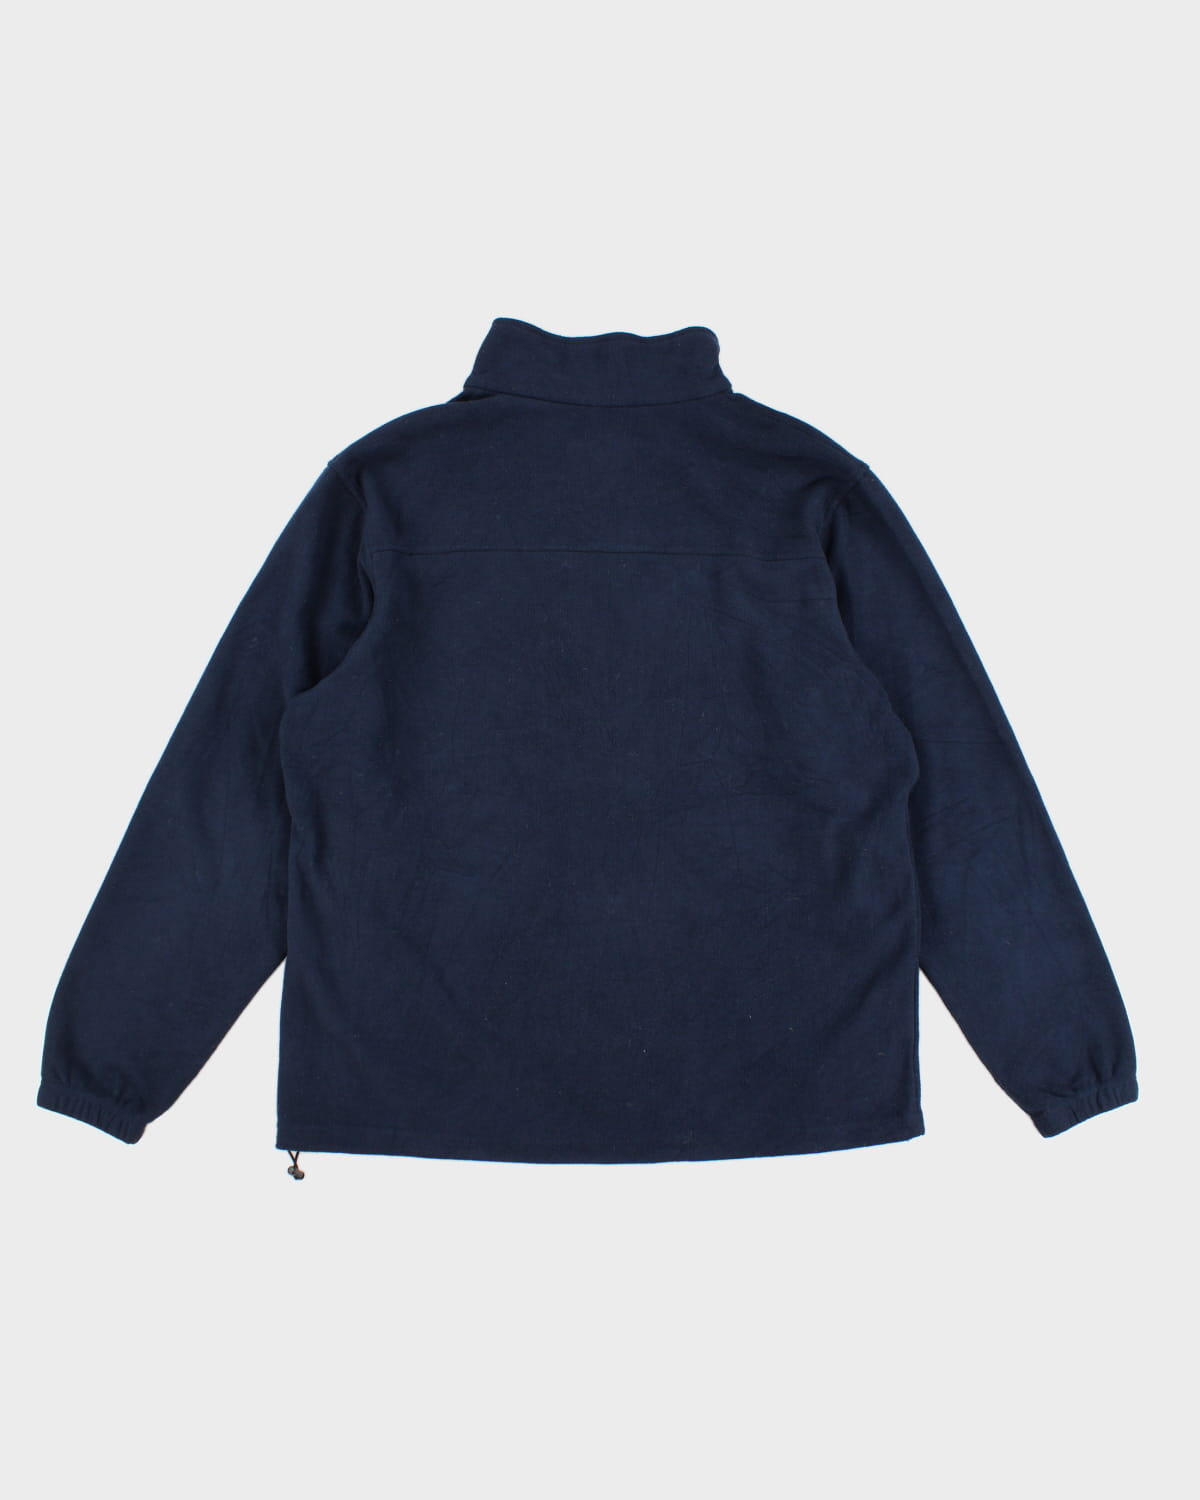 Navy Columbia Zip-Up Sweatshirt - XL